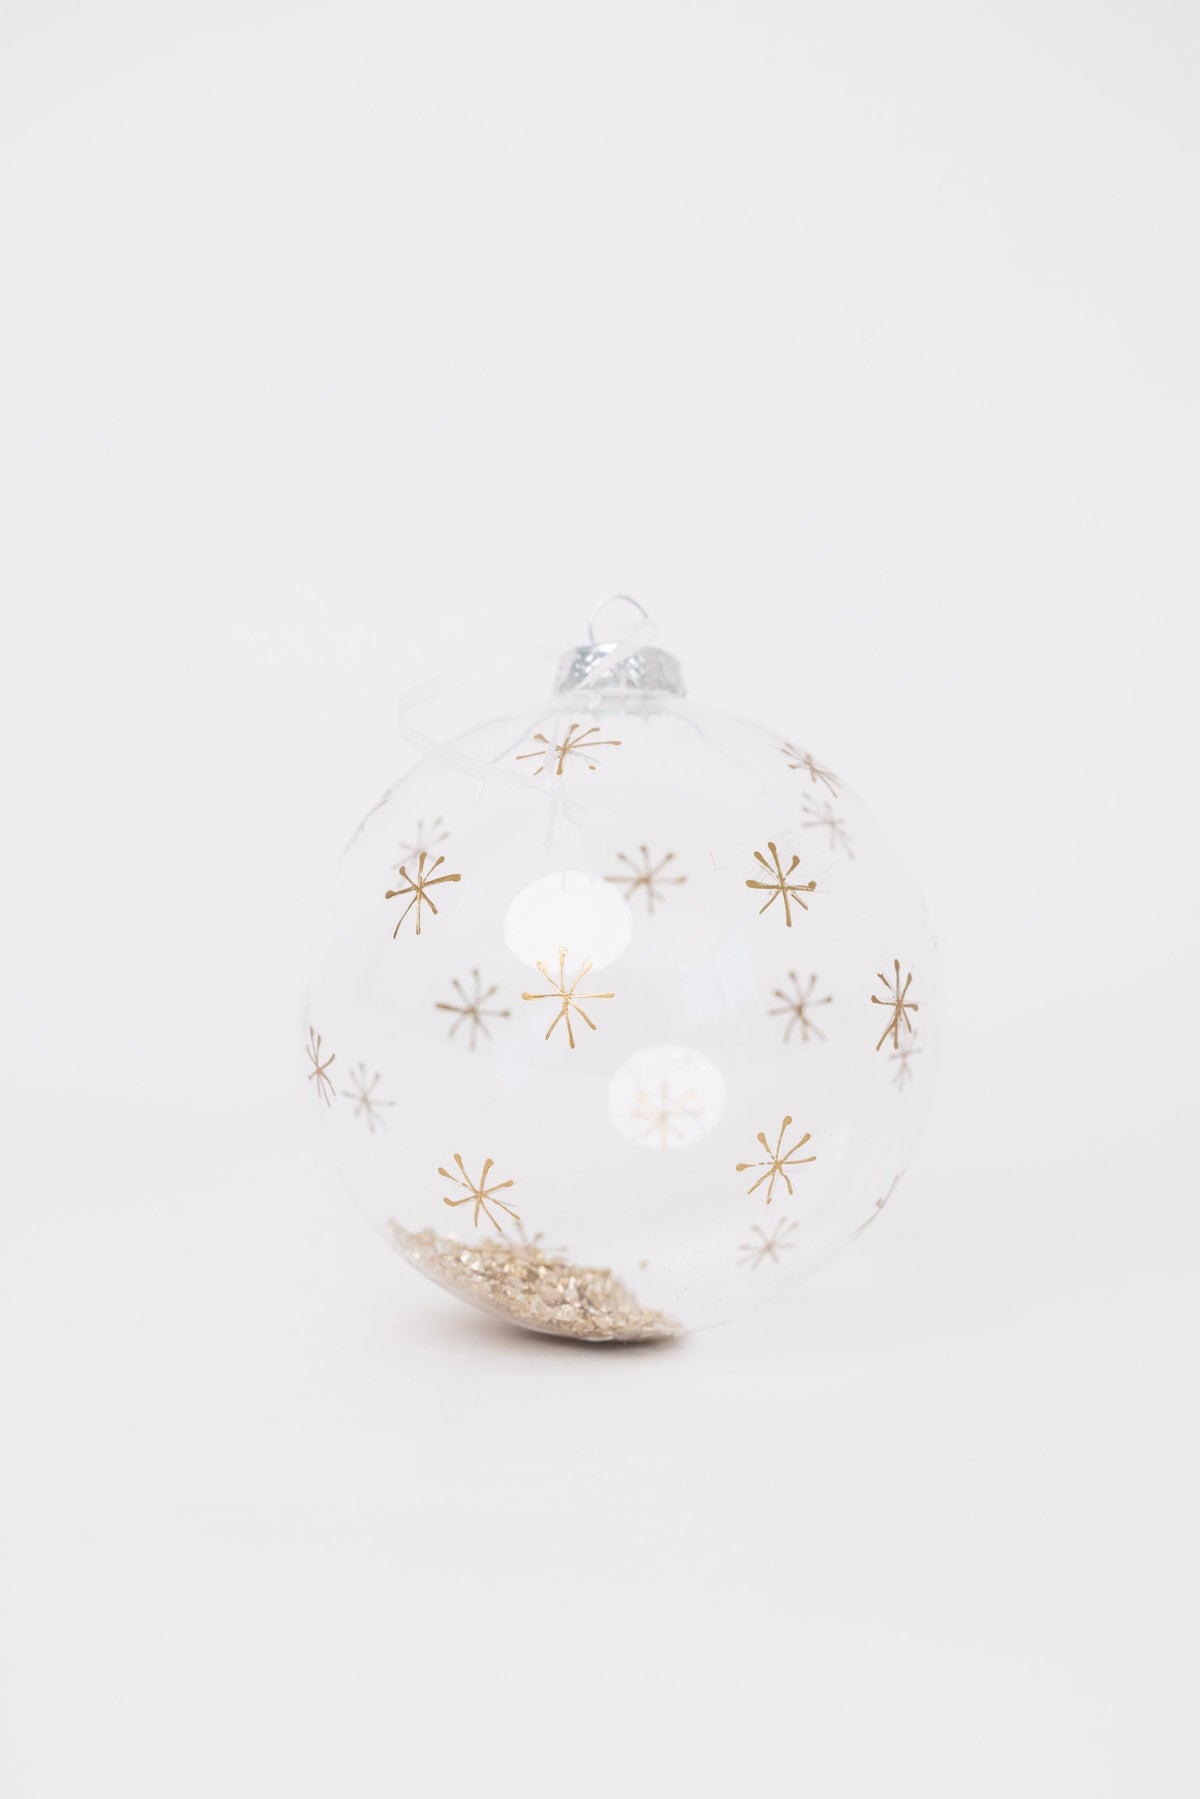 Glitter Dreams Ornament - 2 Sizes